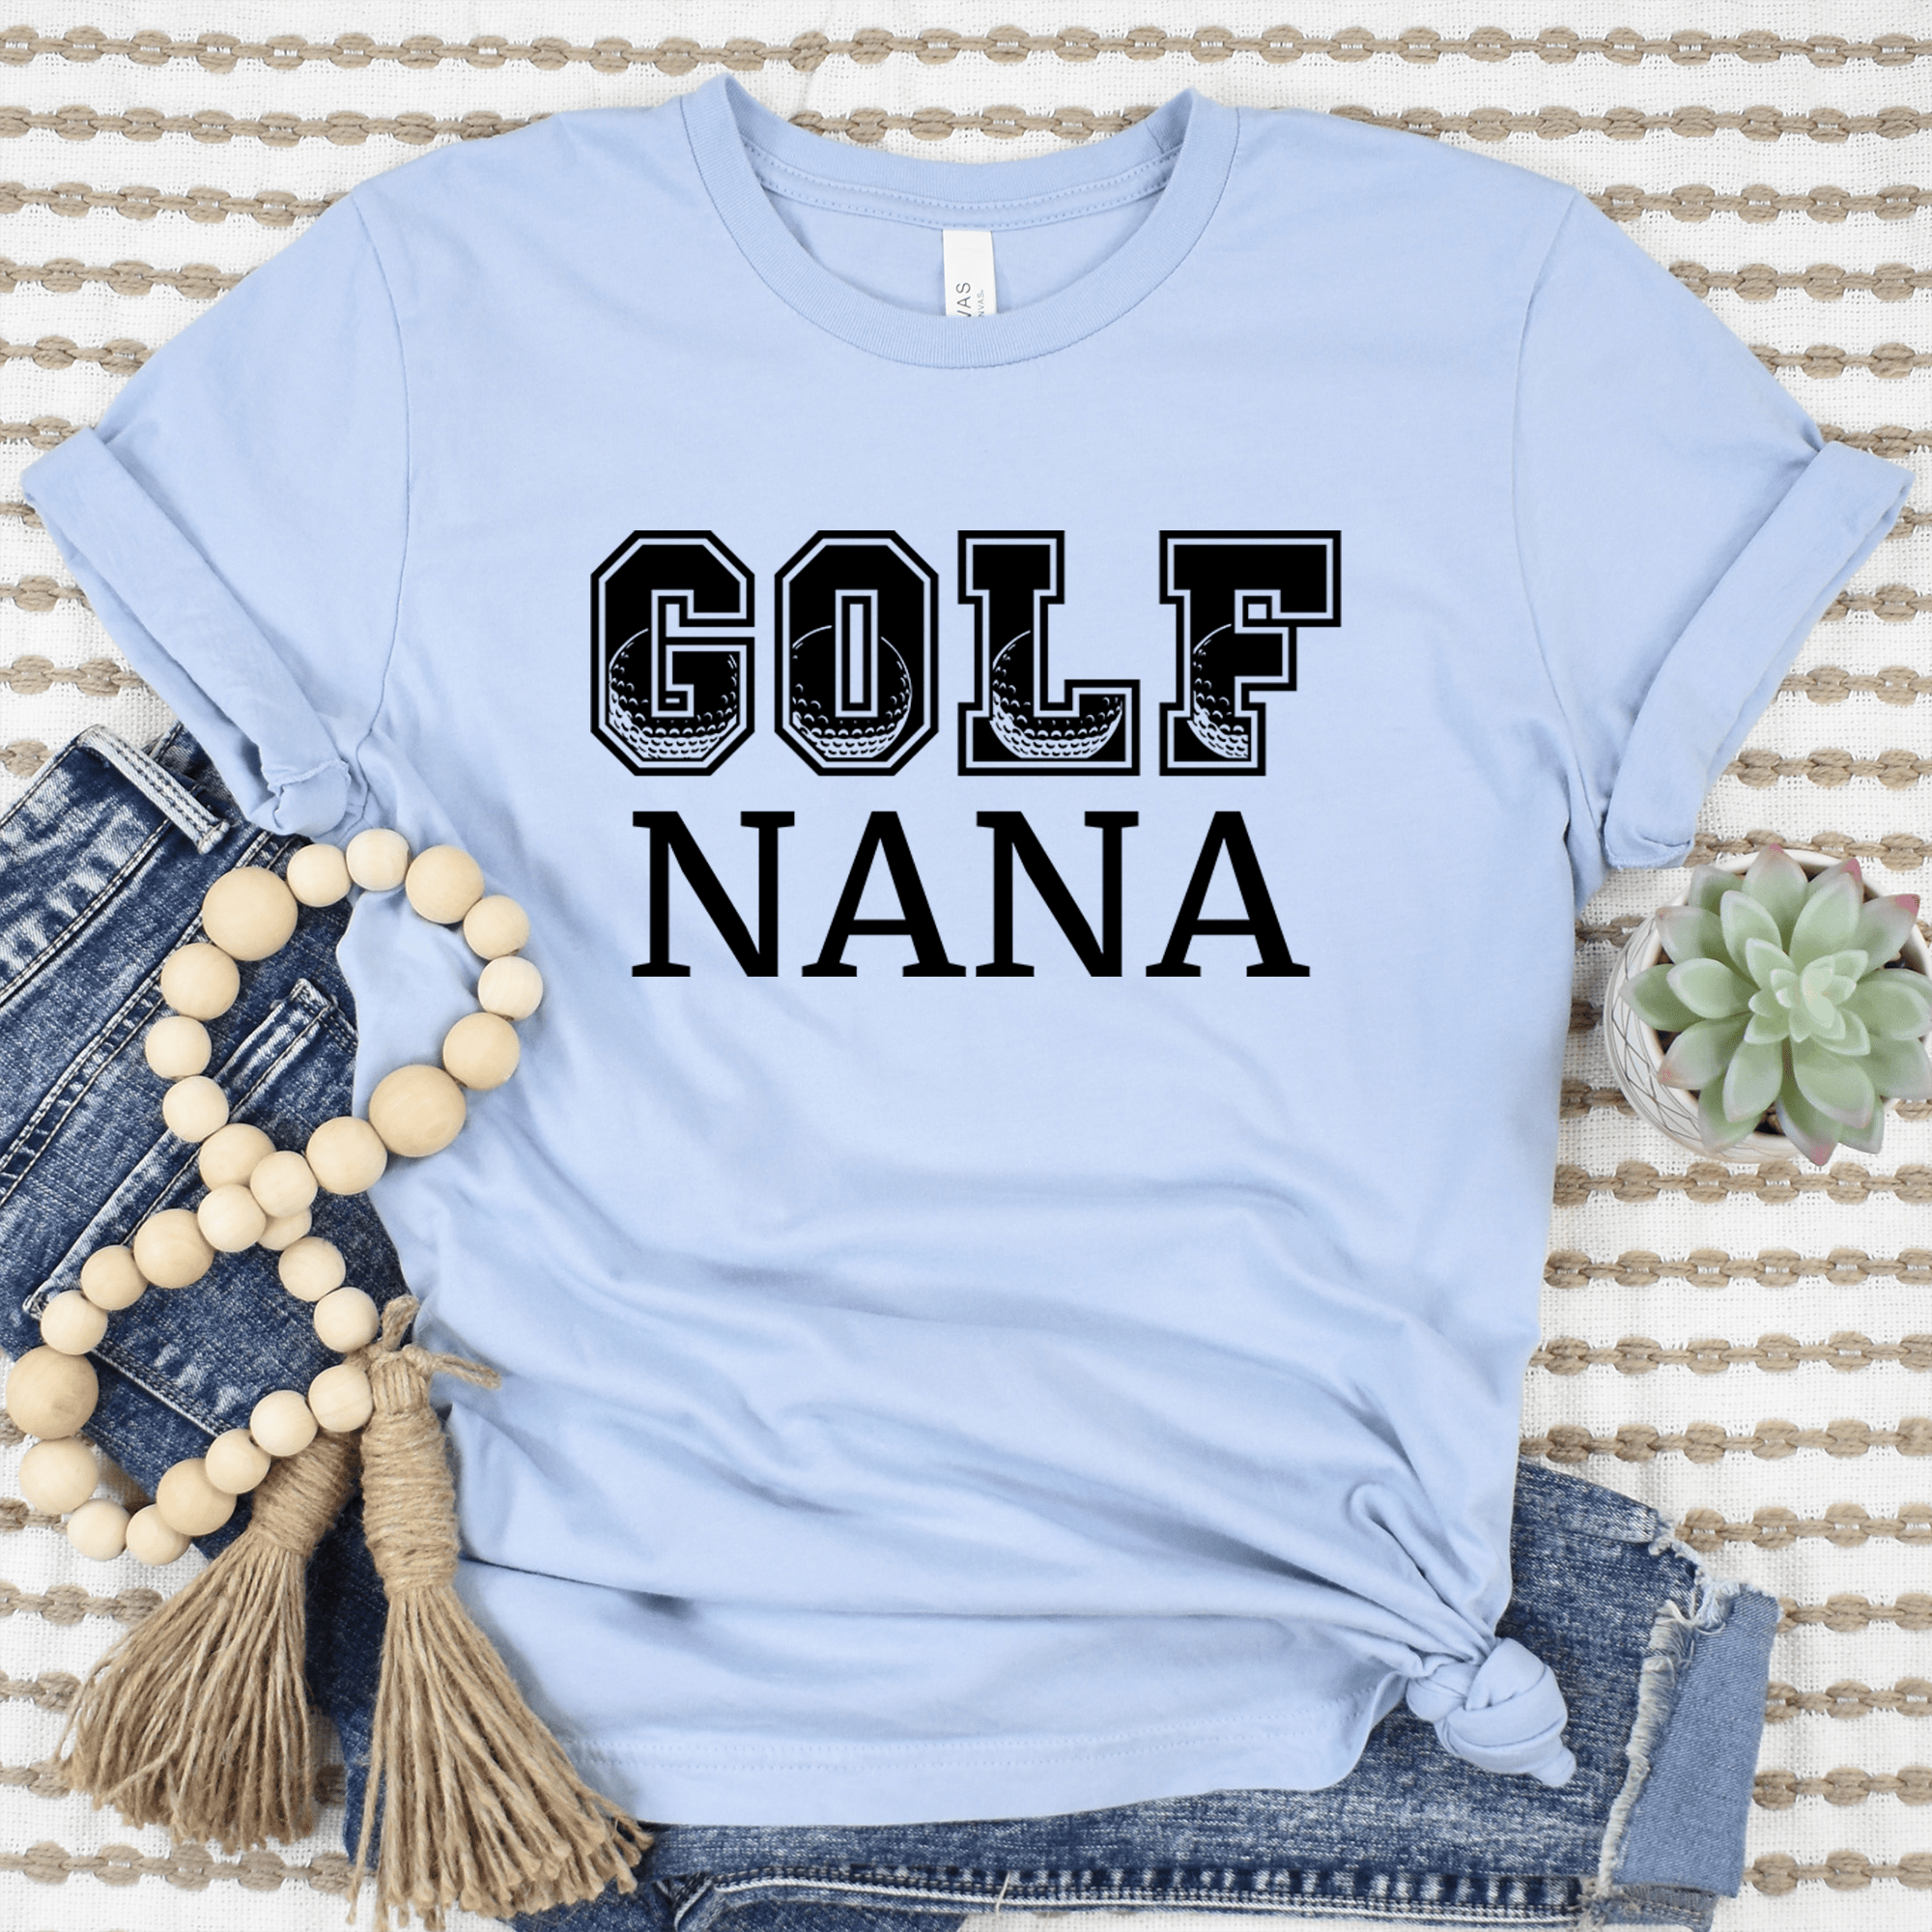 Womens Light Blue T Shirt with Golf-Nana design